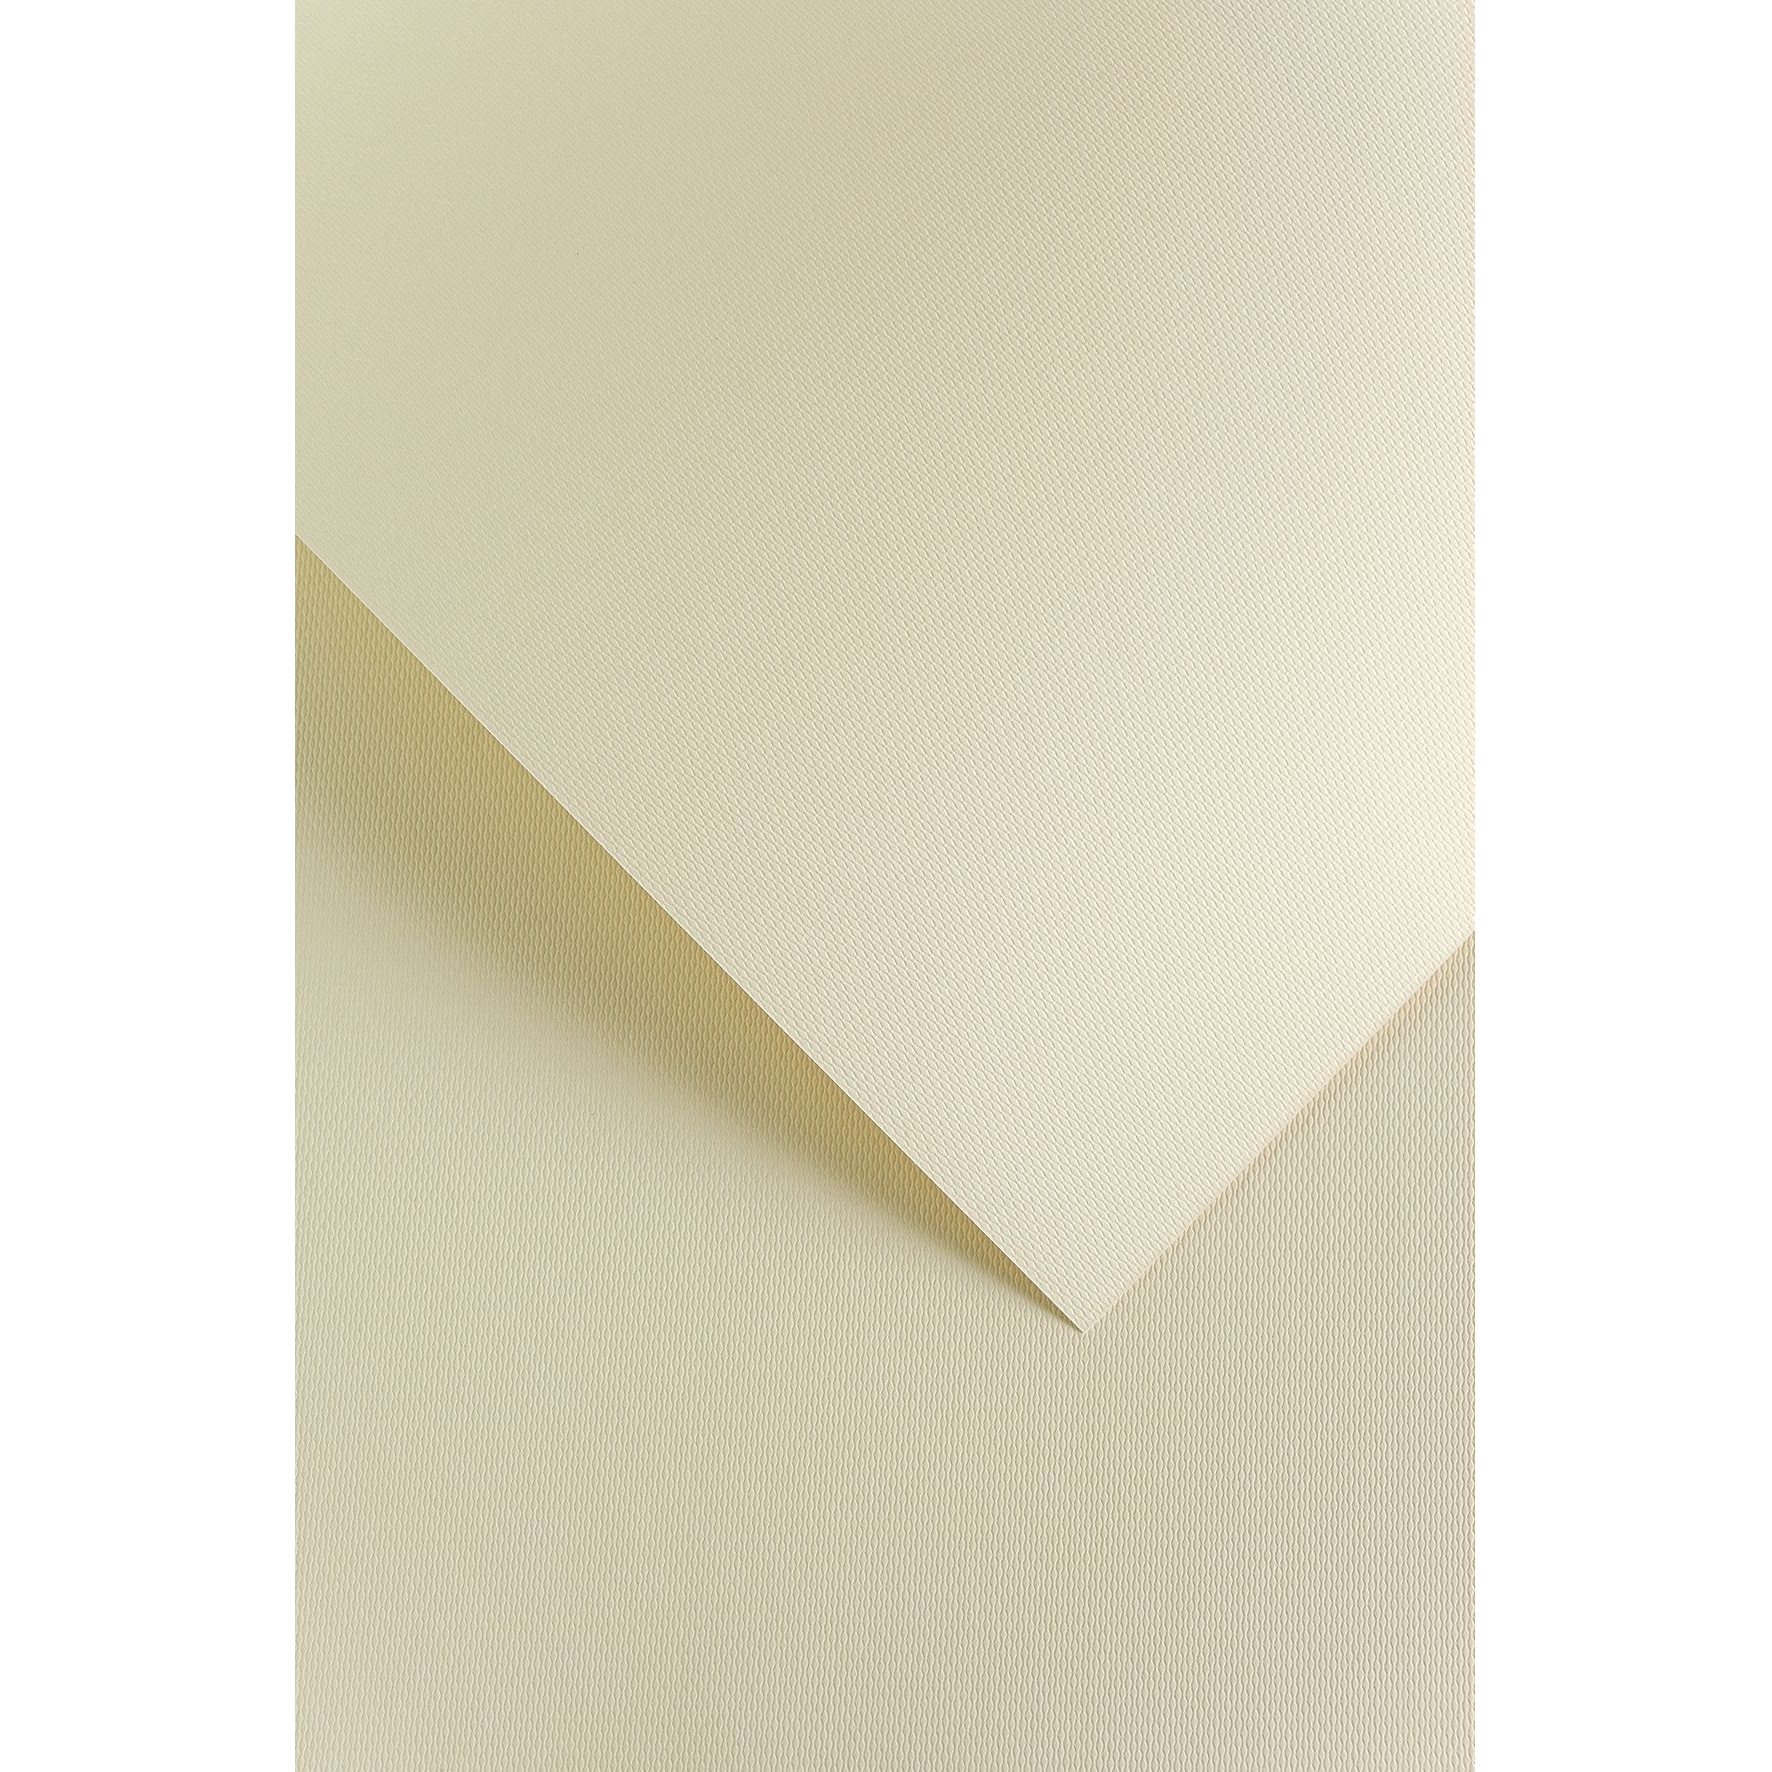 Ozdobný papír Křišťál ivory 230g, 20ks